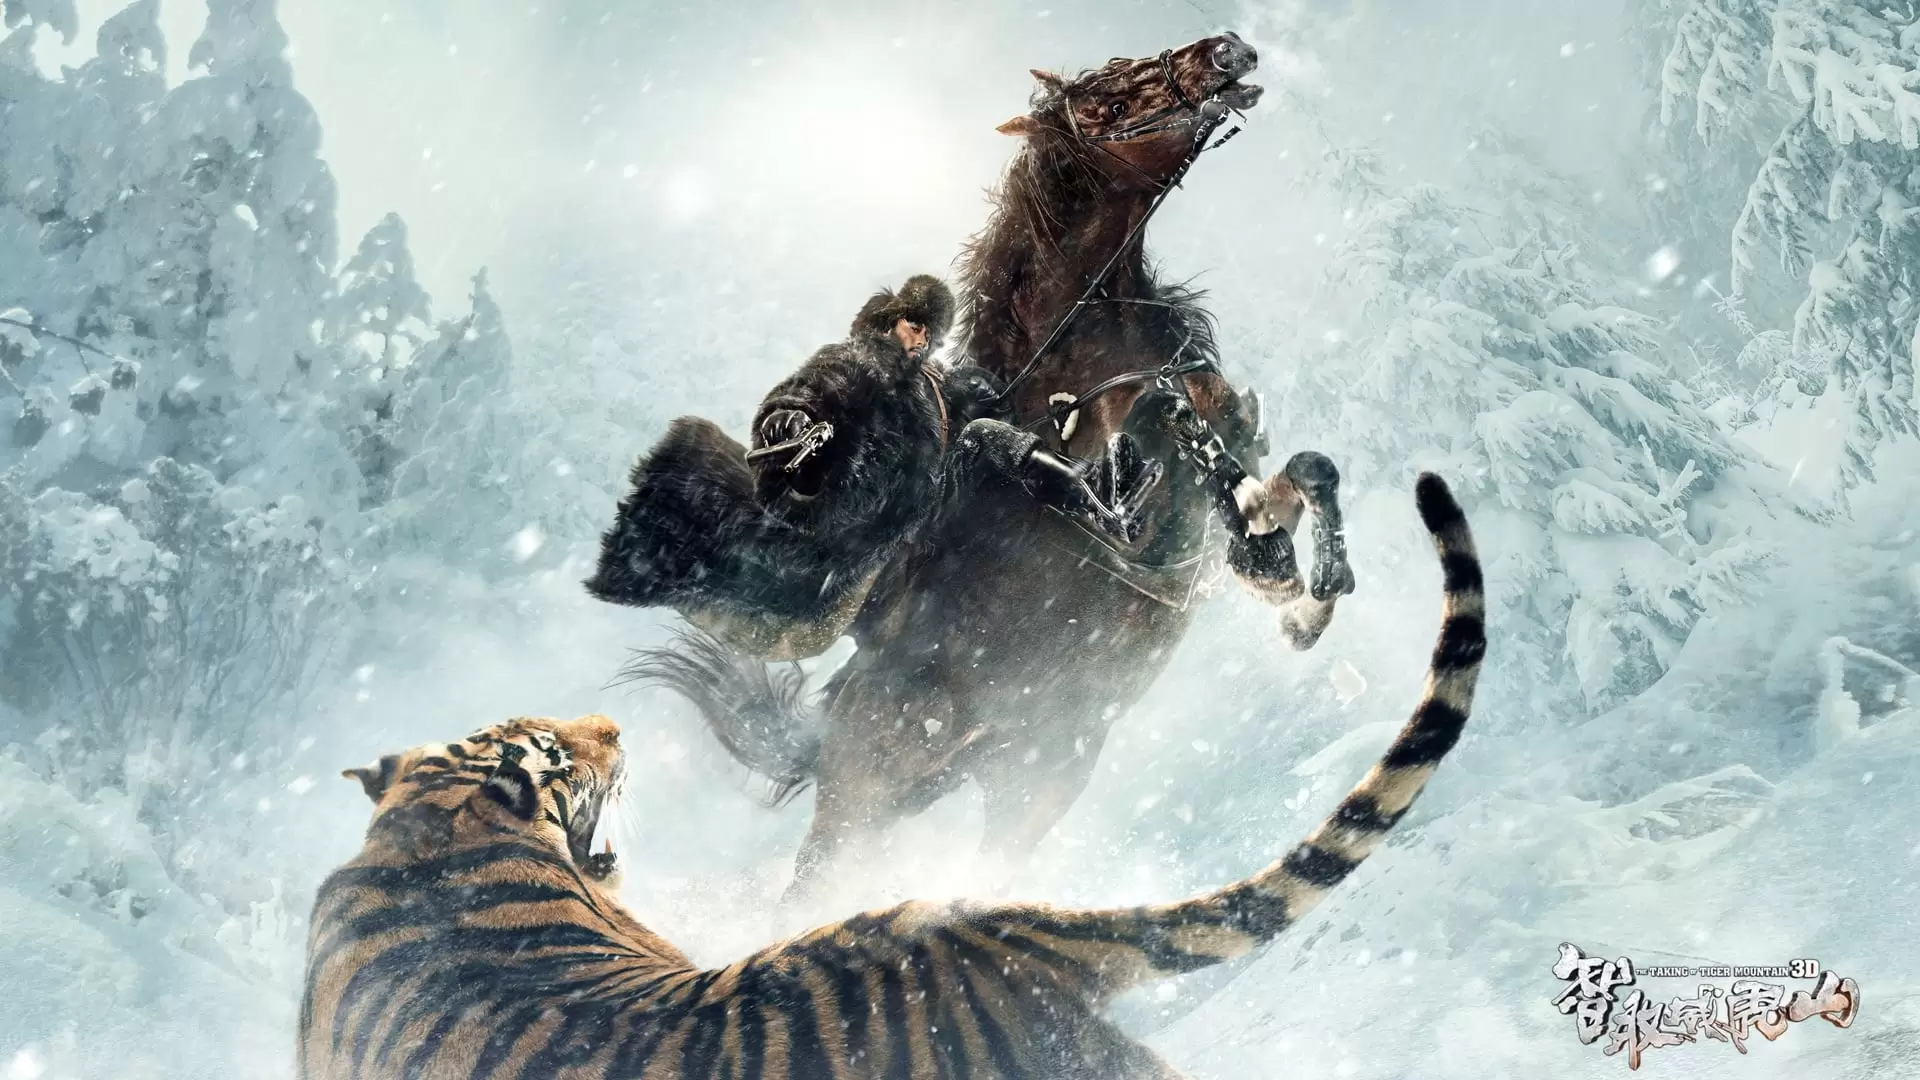 دانلود فیلم The Taking of Tiger Mountain 2014 با زیرنویس فارسی